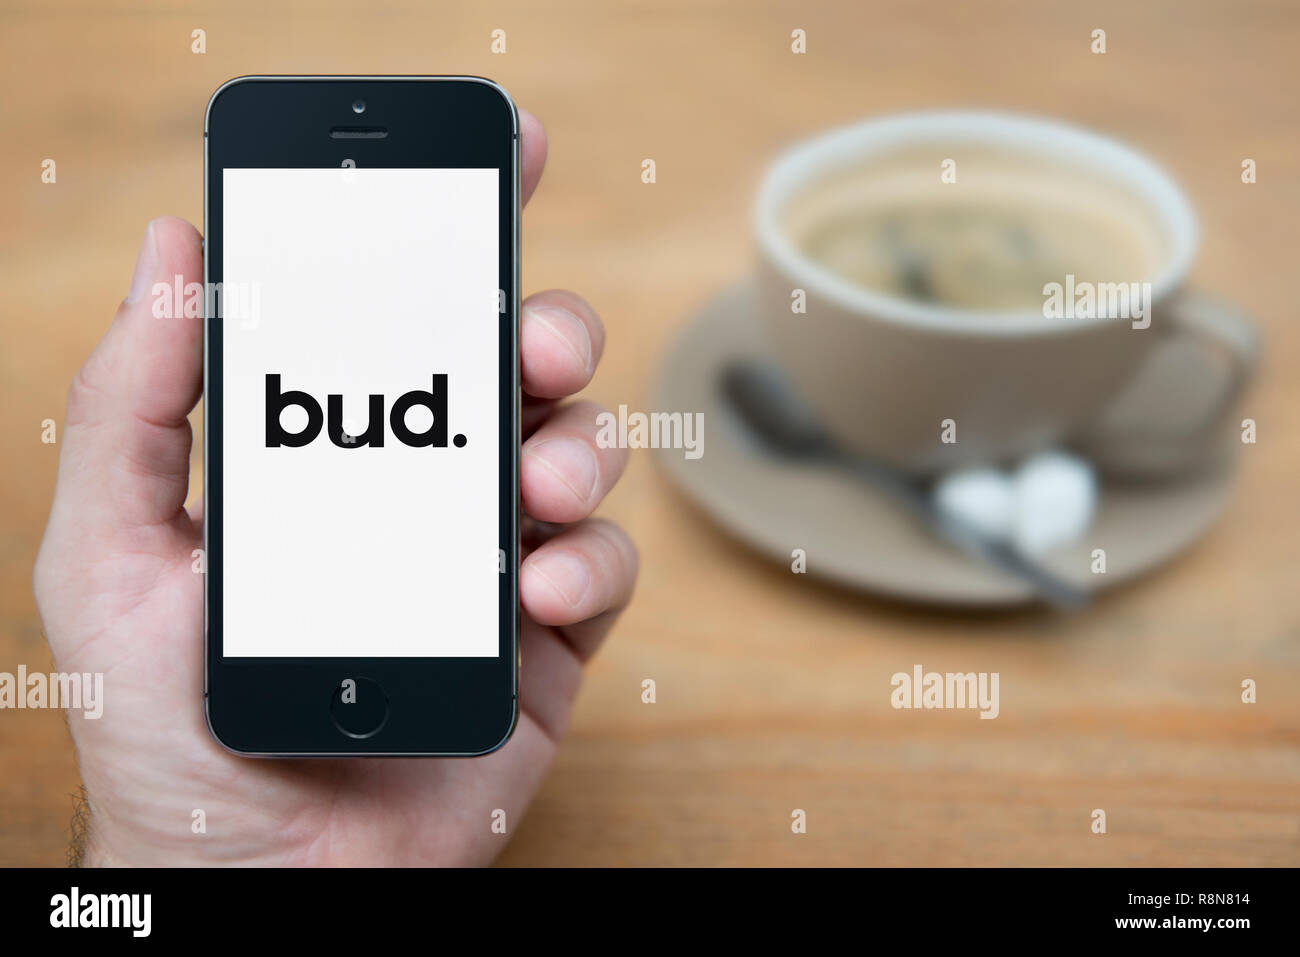 Un uomo guarda al suo iPhone che visualizza il bud. logo (solo uso editoriale). Foto Stock